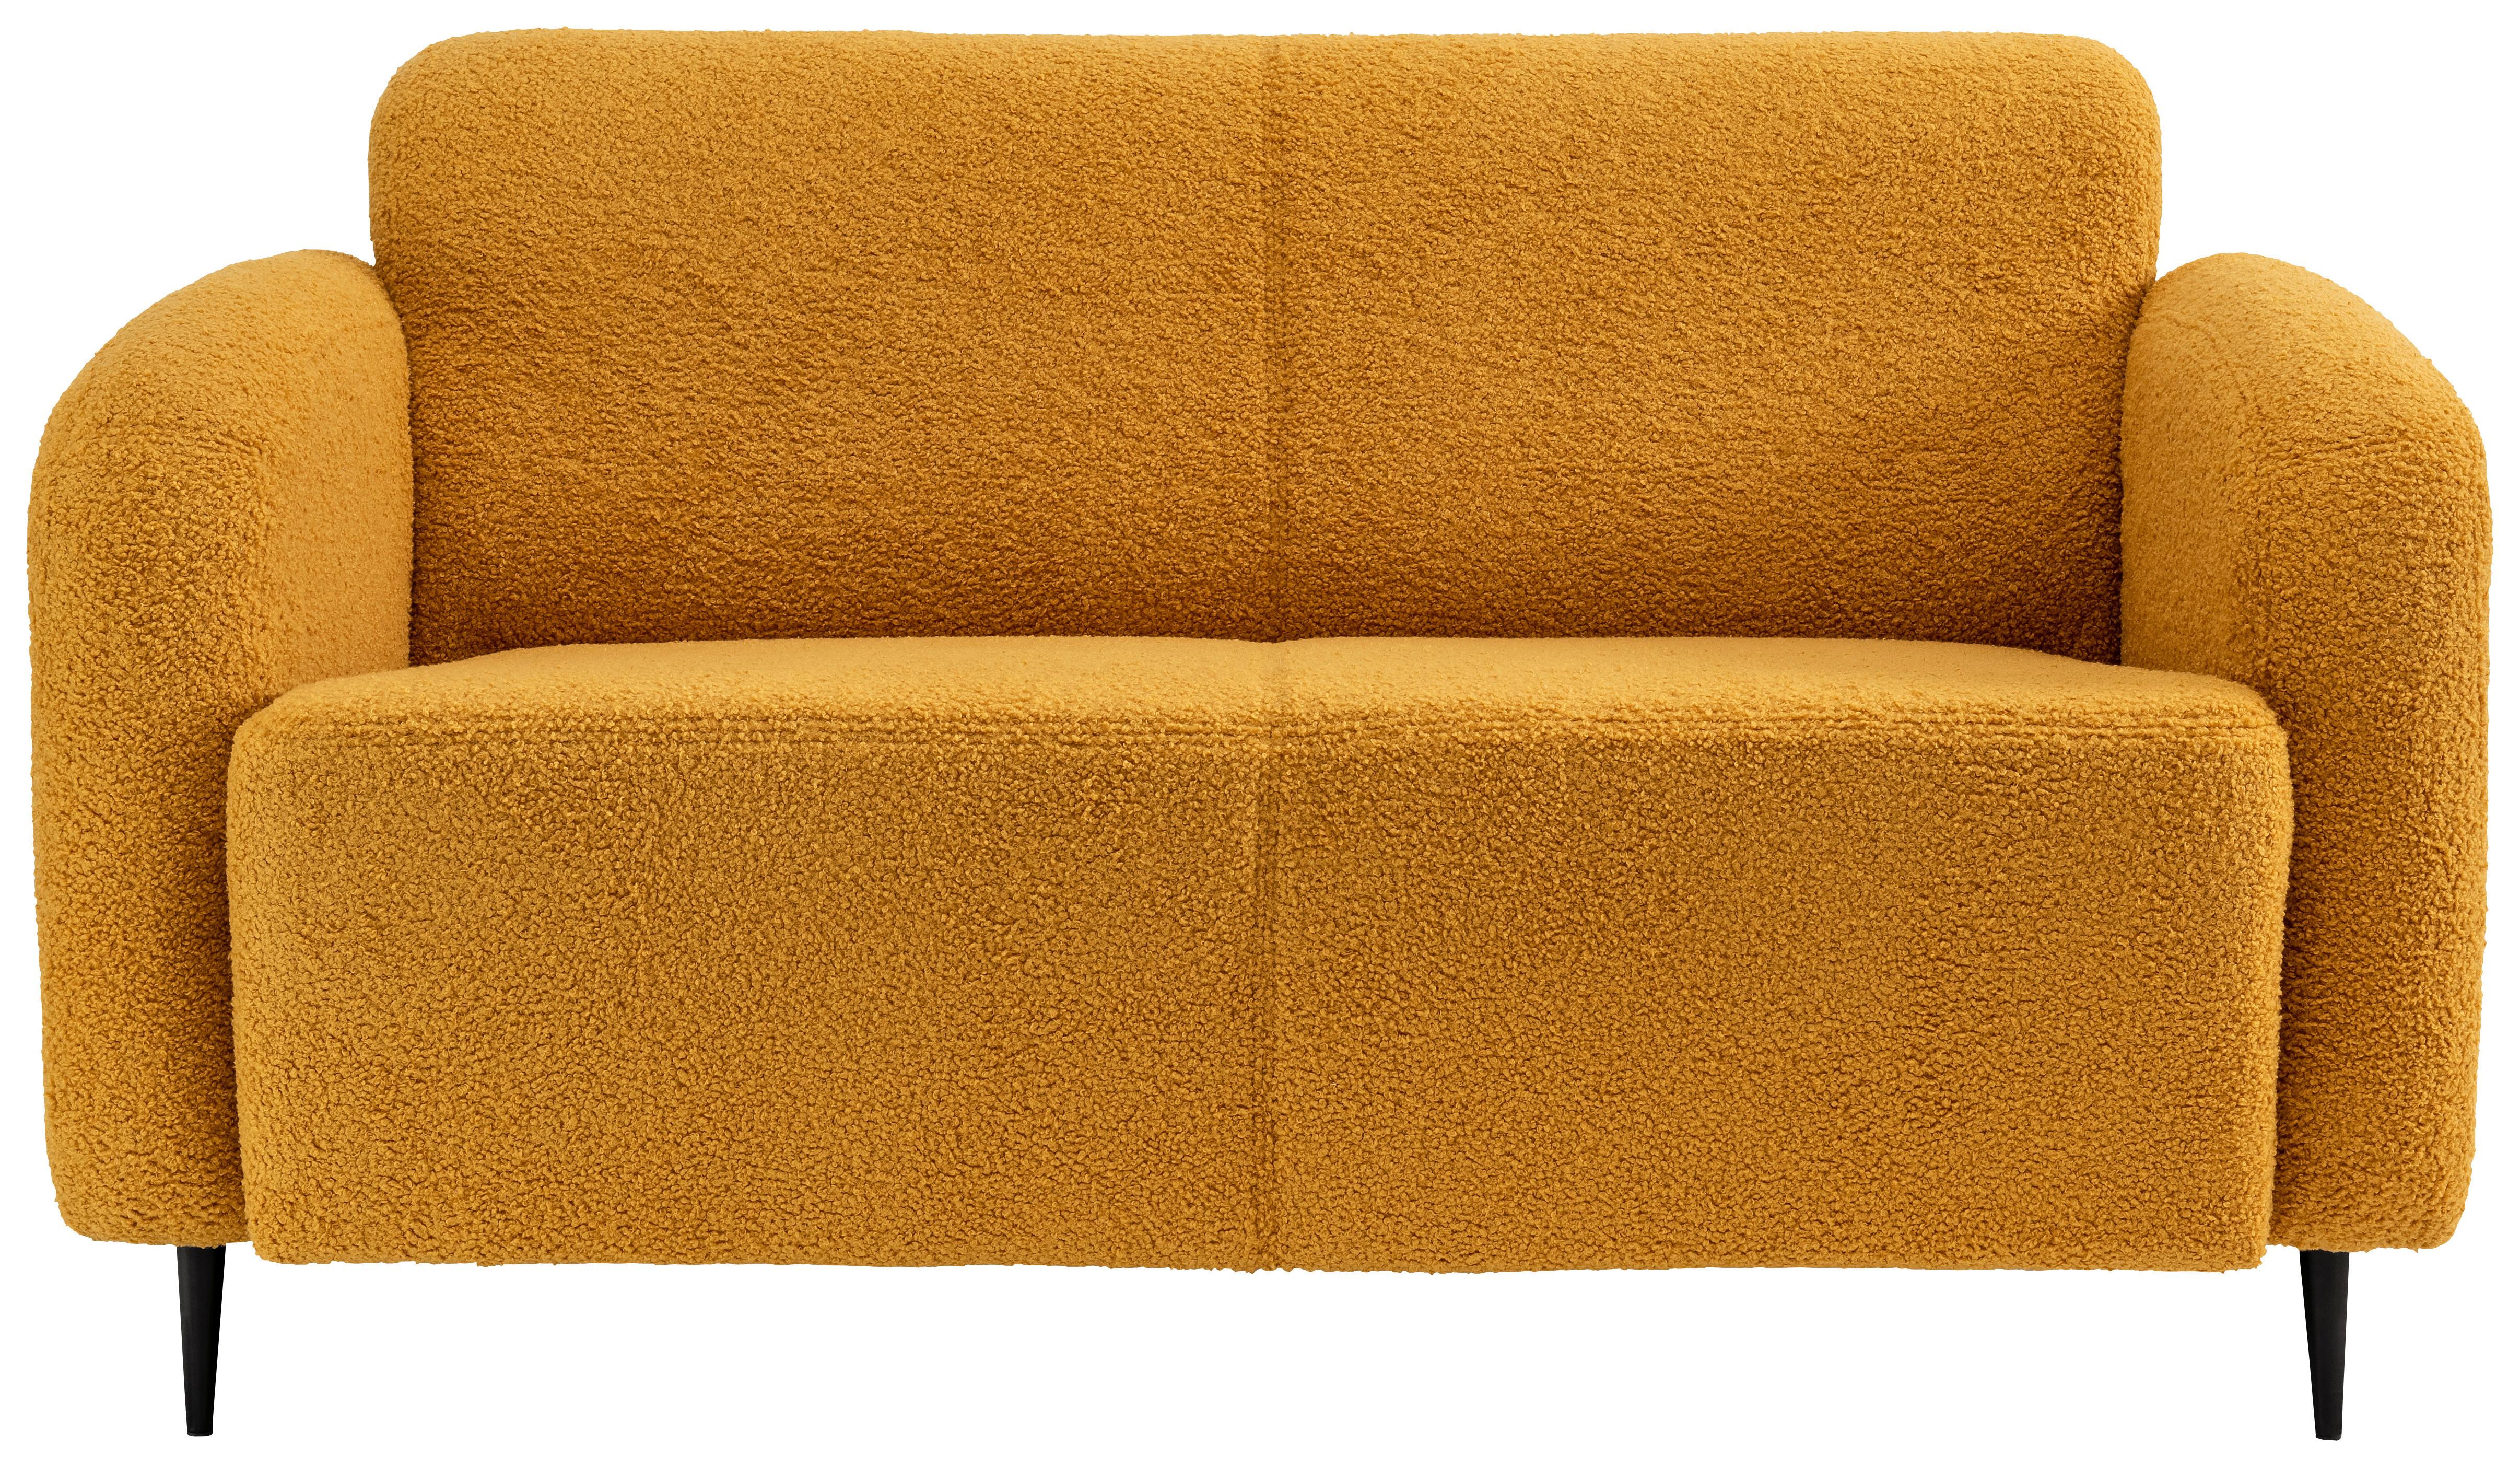 2-Sitzer-Sofa Marone Gelb Teddystoff - Gelb/Schwarz, MODERN, Textil (140/76/90cm) - Livetastic